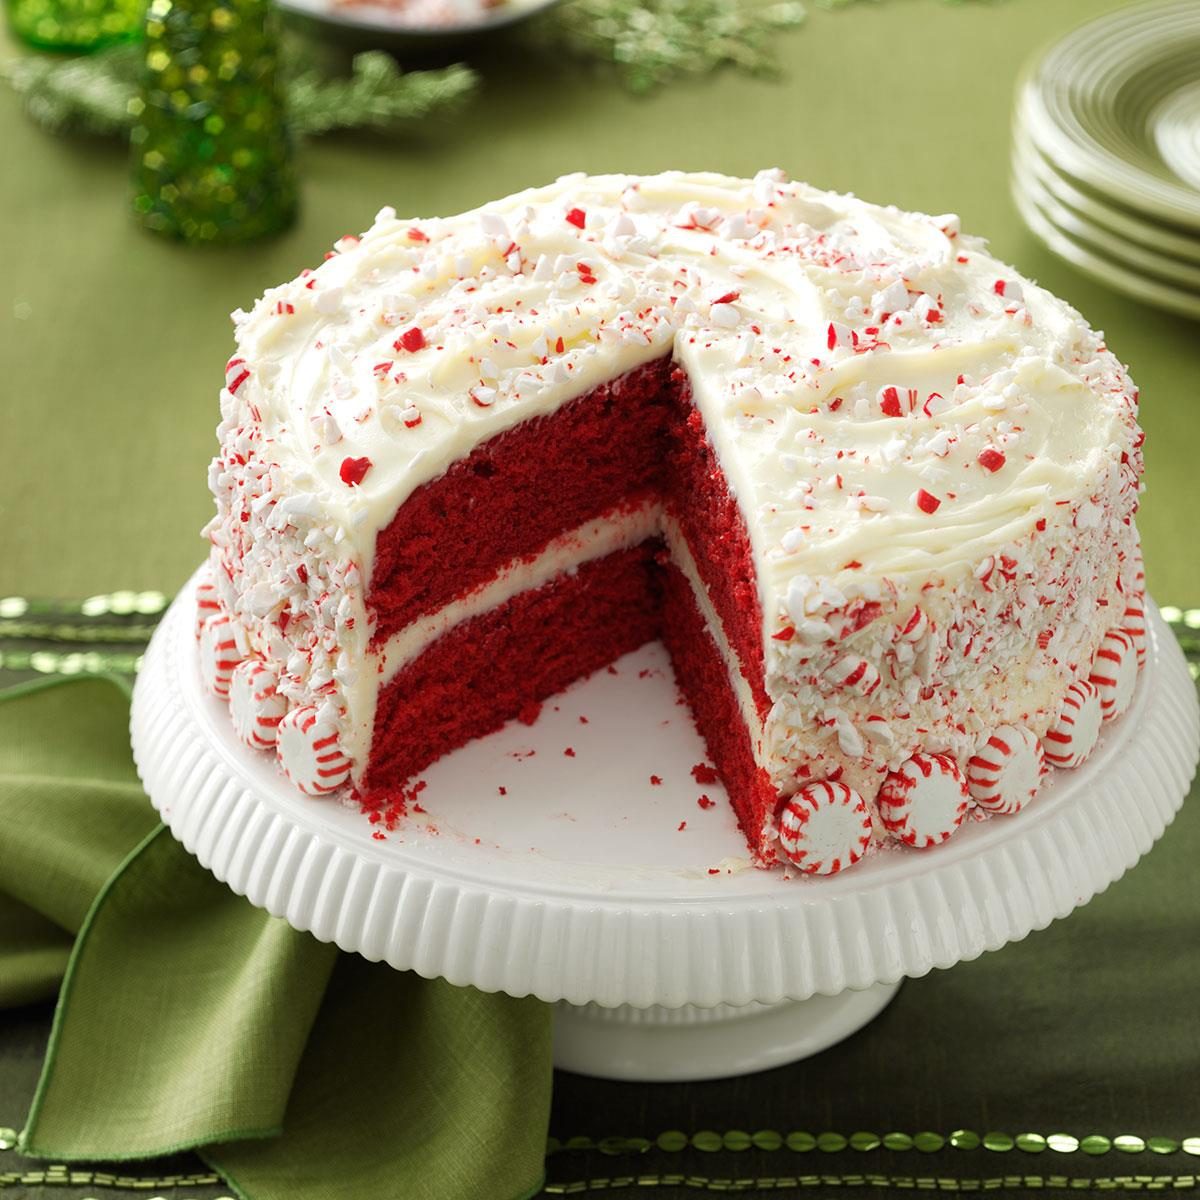 Peppermint Red Velvet Cake Recipe: How to Make It